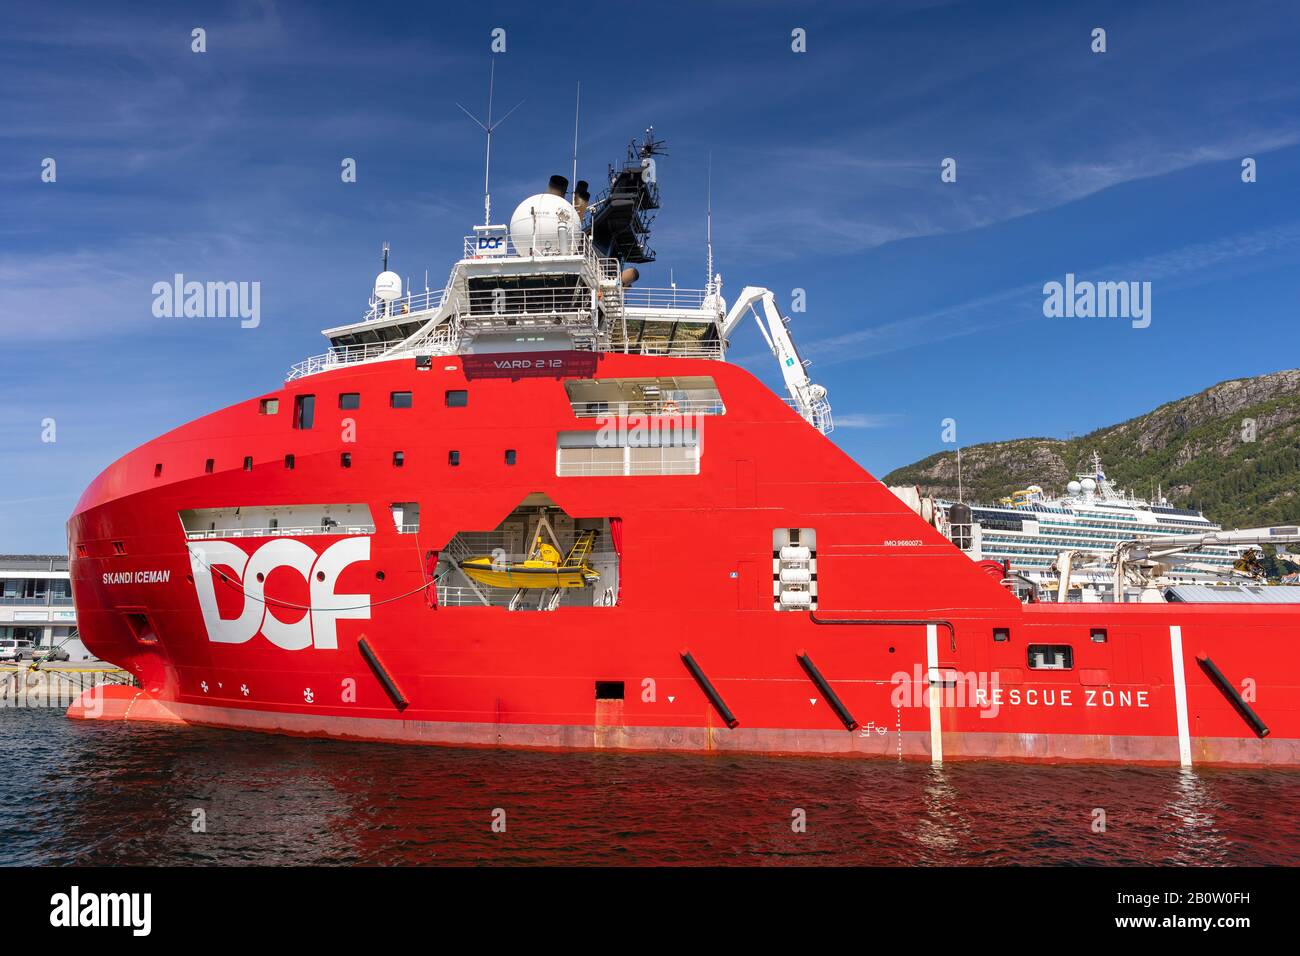 Bergen, NORWEGEN - Handelsschiff Scandi Iceman, ein Transportschiff für Tiefseefanker, im Hafen angedockt. Stockfoto